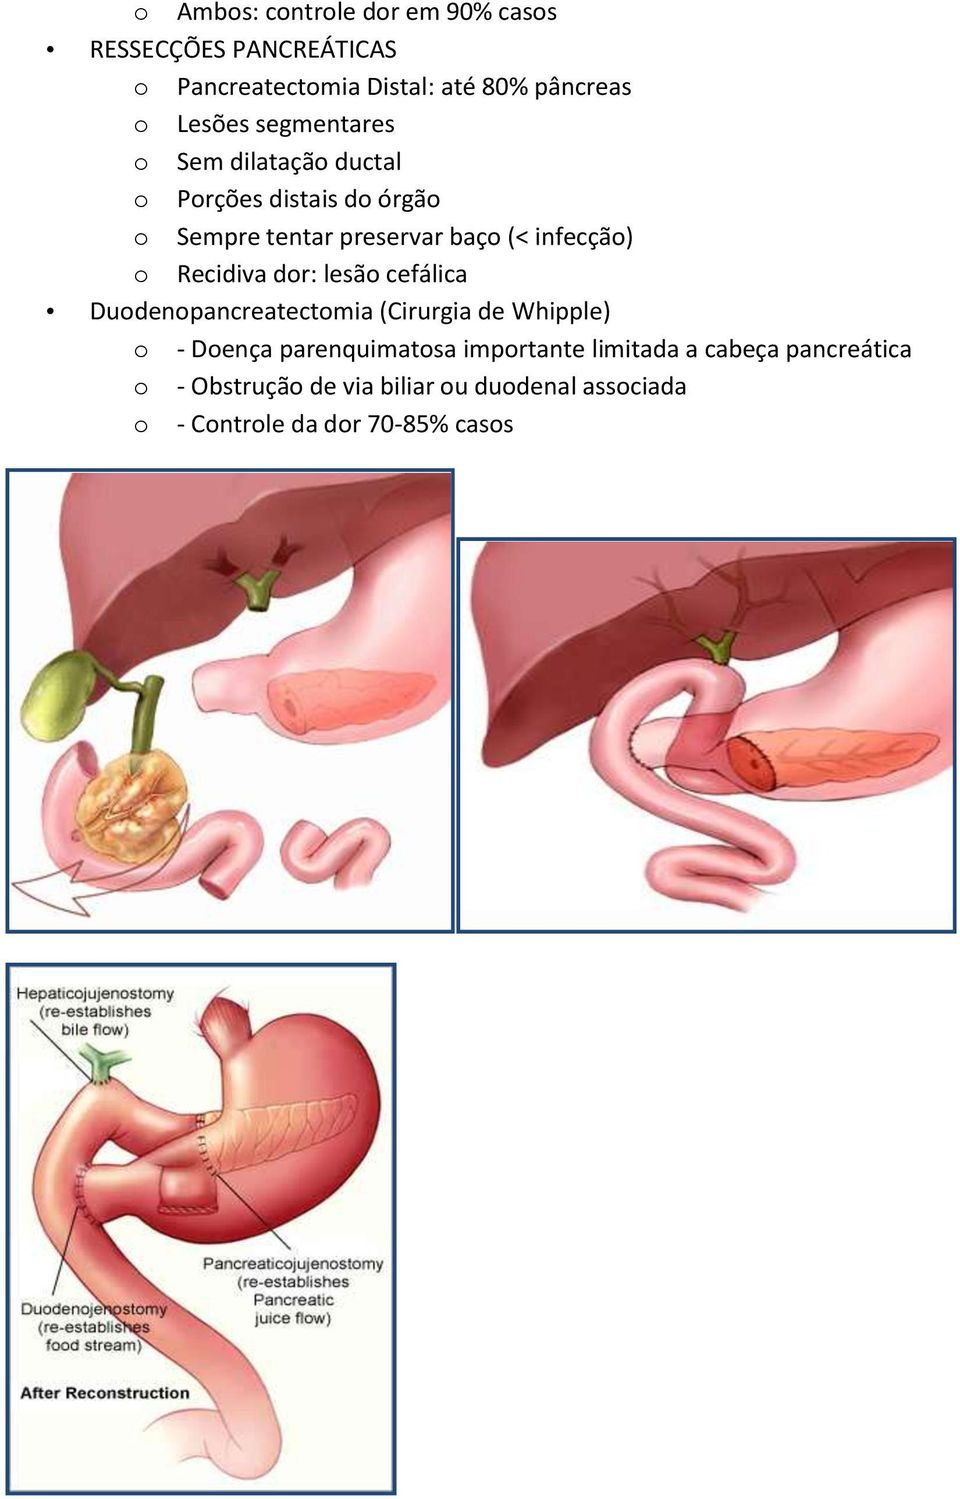 Recidiva dr: lesã cefálica Dudenpancreatectmia (Cirurgia de Whipple) - Dença parenquimatsa